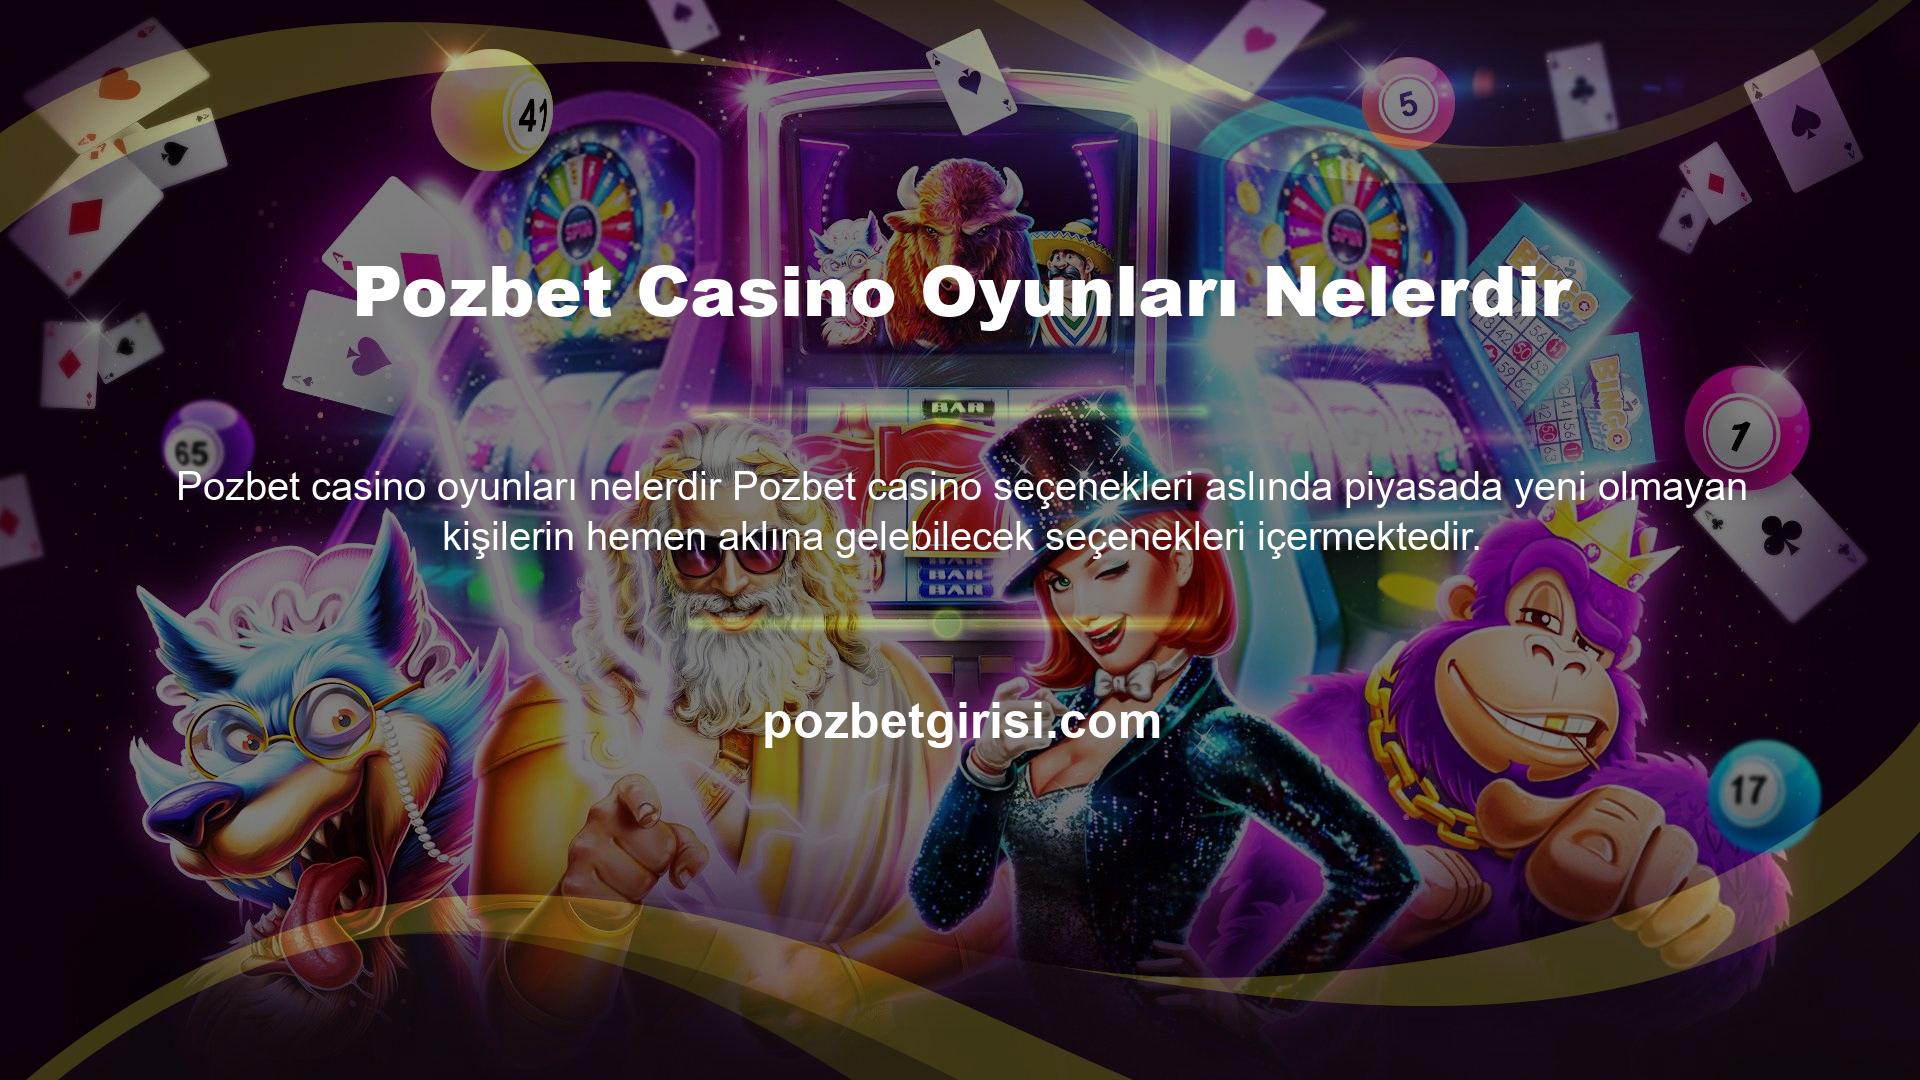 Pozbet Mobile Casino, popüler ve modaya uygun oyun seçenekleri sunan, bugünlerde çıkan tüm oyunlara sahiptir